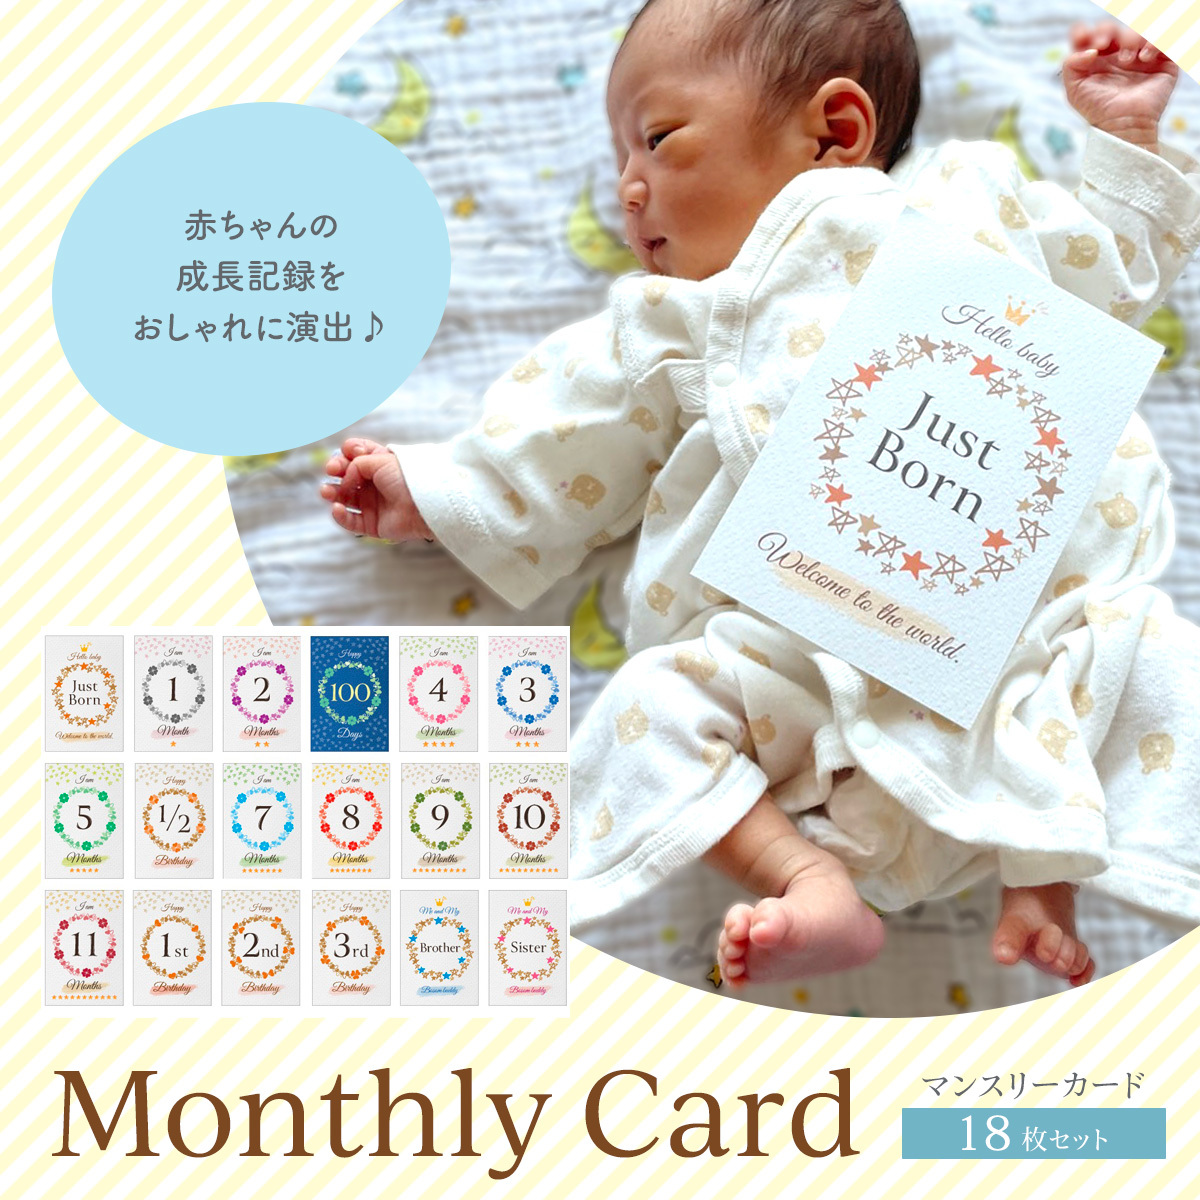 日本製 マンスリーカード 月齢フォト ハガキサイズ グッズ 赤ちゃん 月齢 カード 小物 3歳までの フォト 男の子 18種類セット 月齢カード